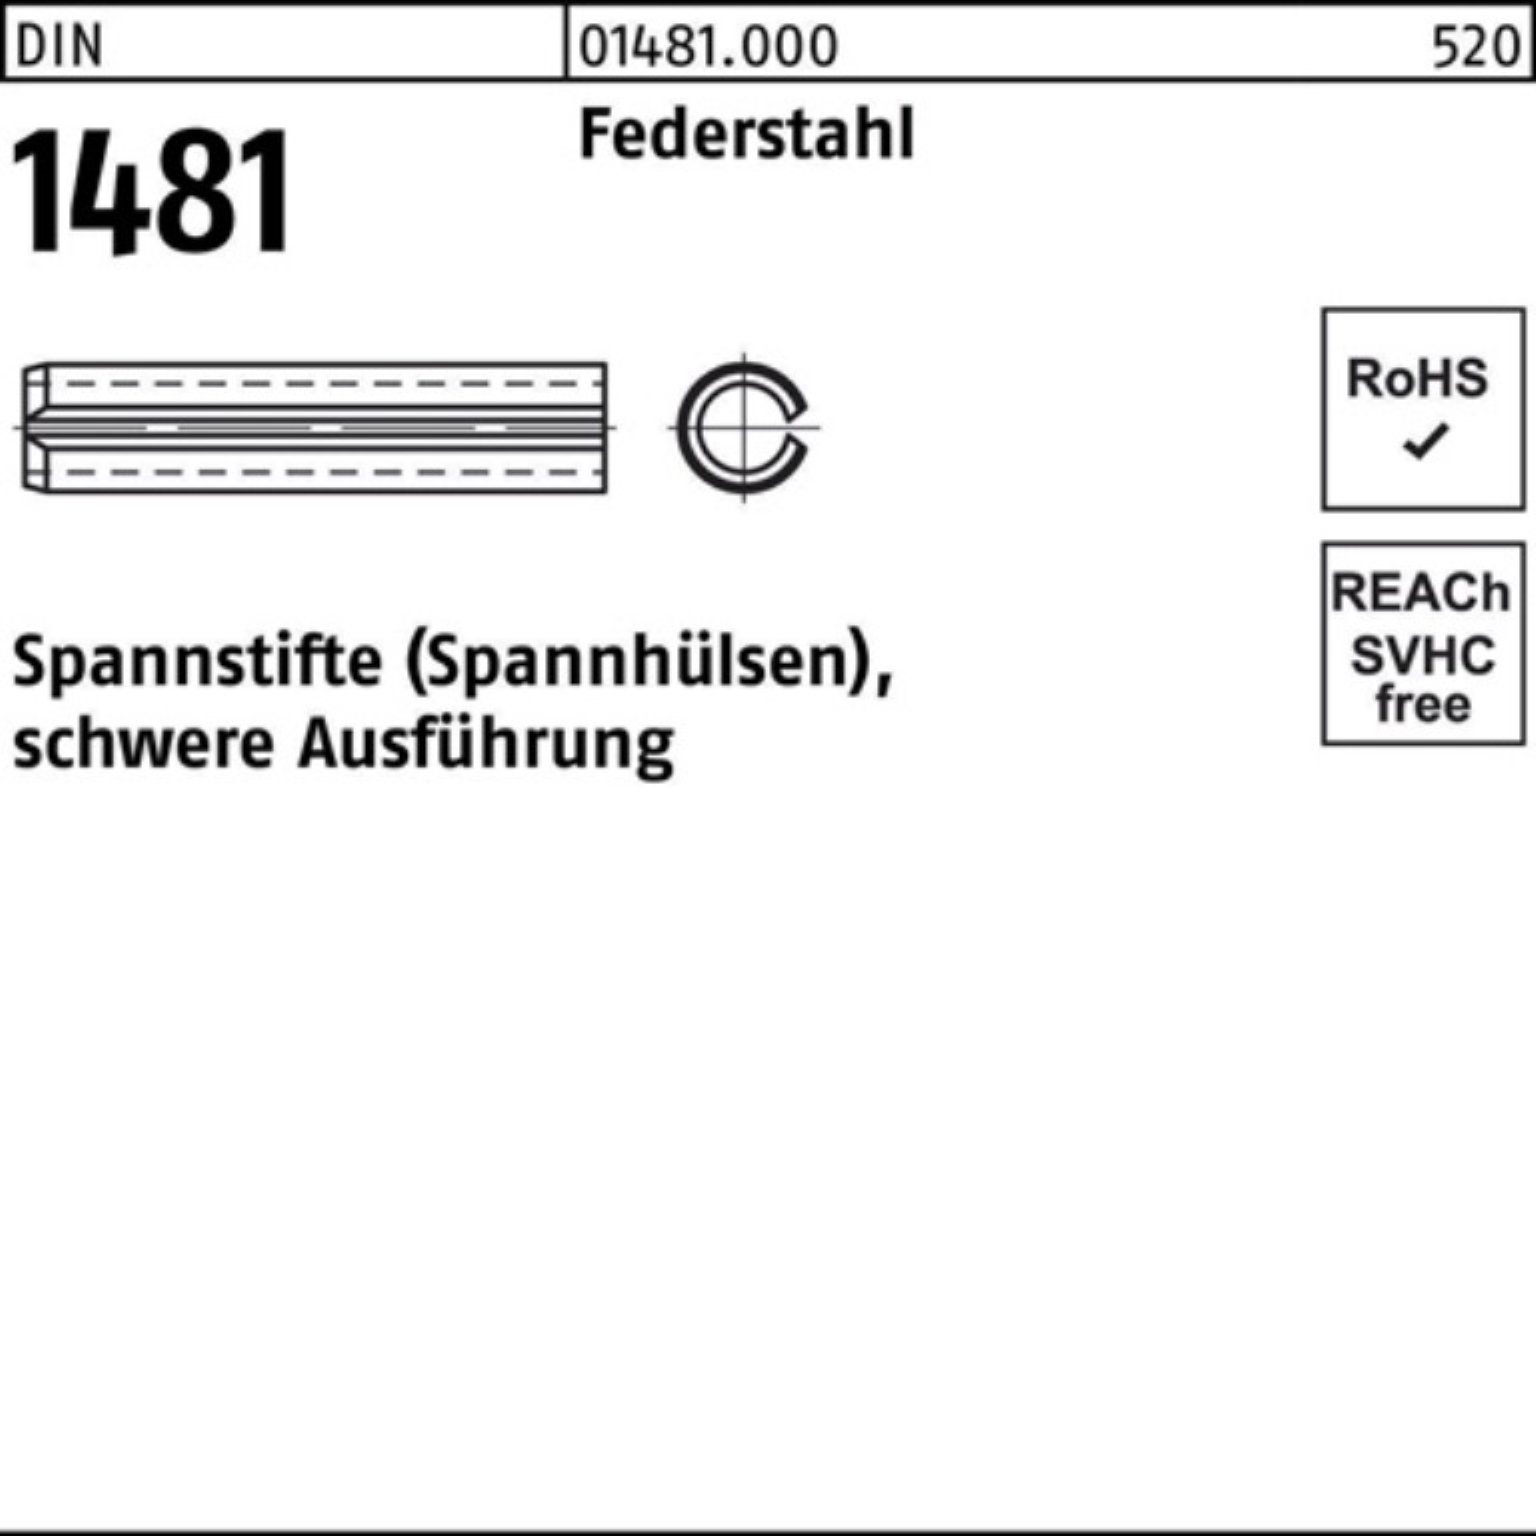 1481 DIN Federstahl schwere 100er 180 Spannstift Ausführung Spannstift Reyher Pack 30x